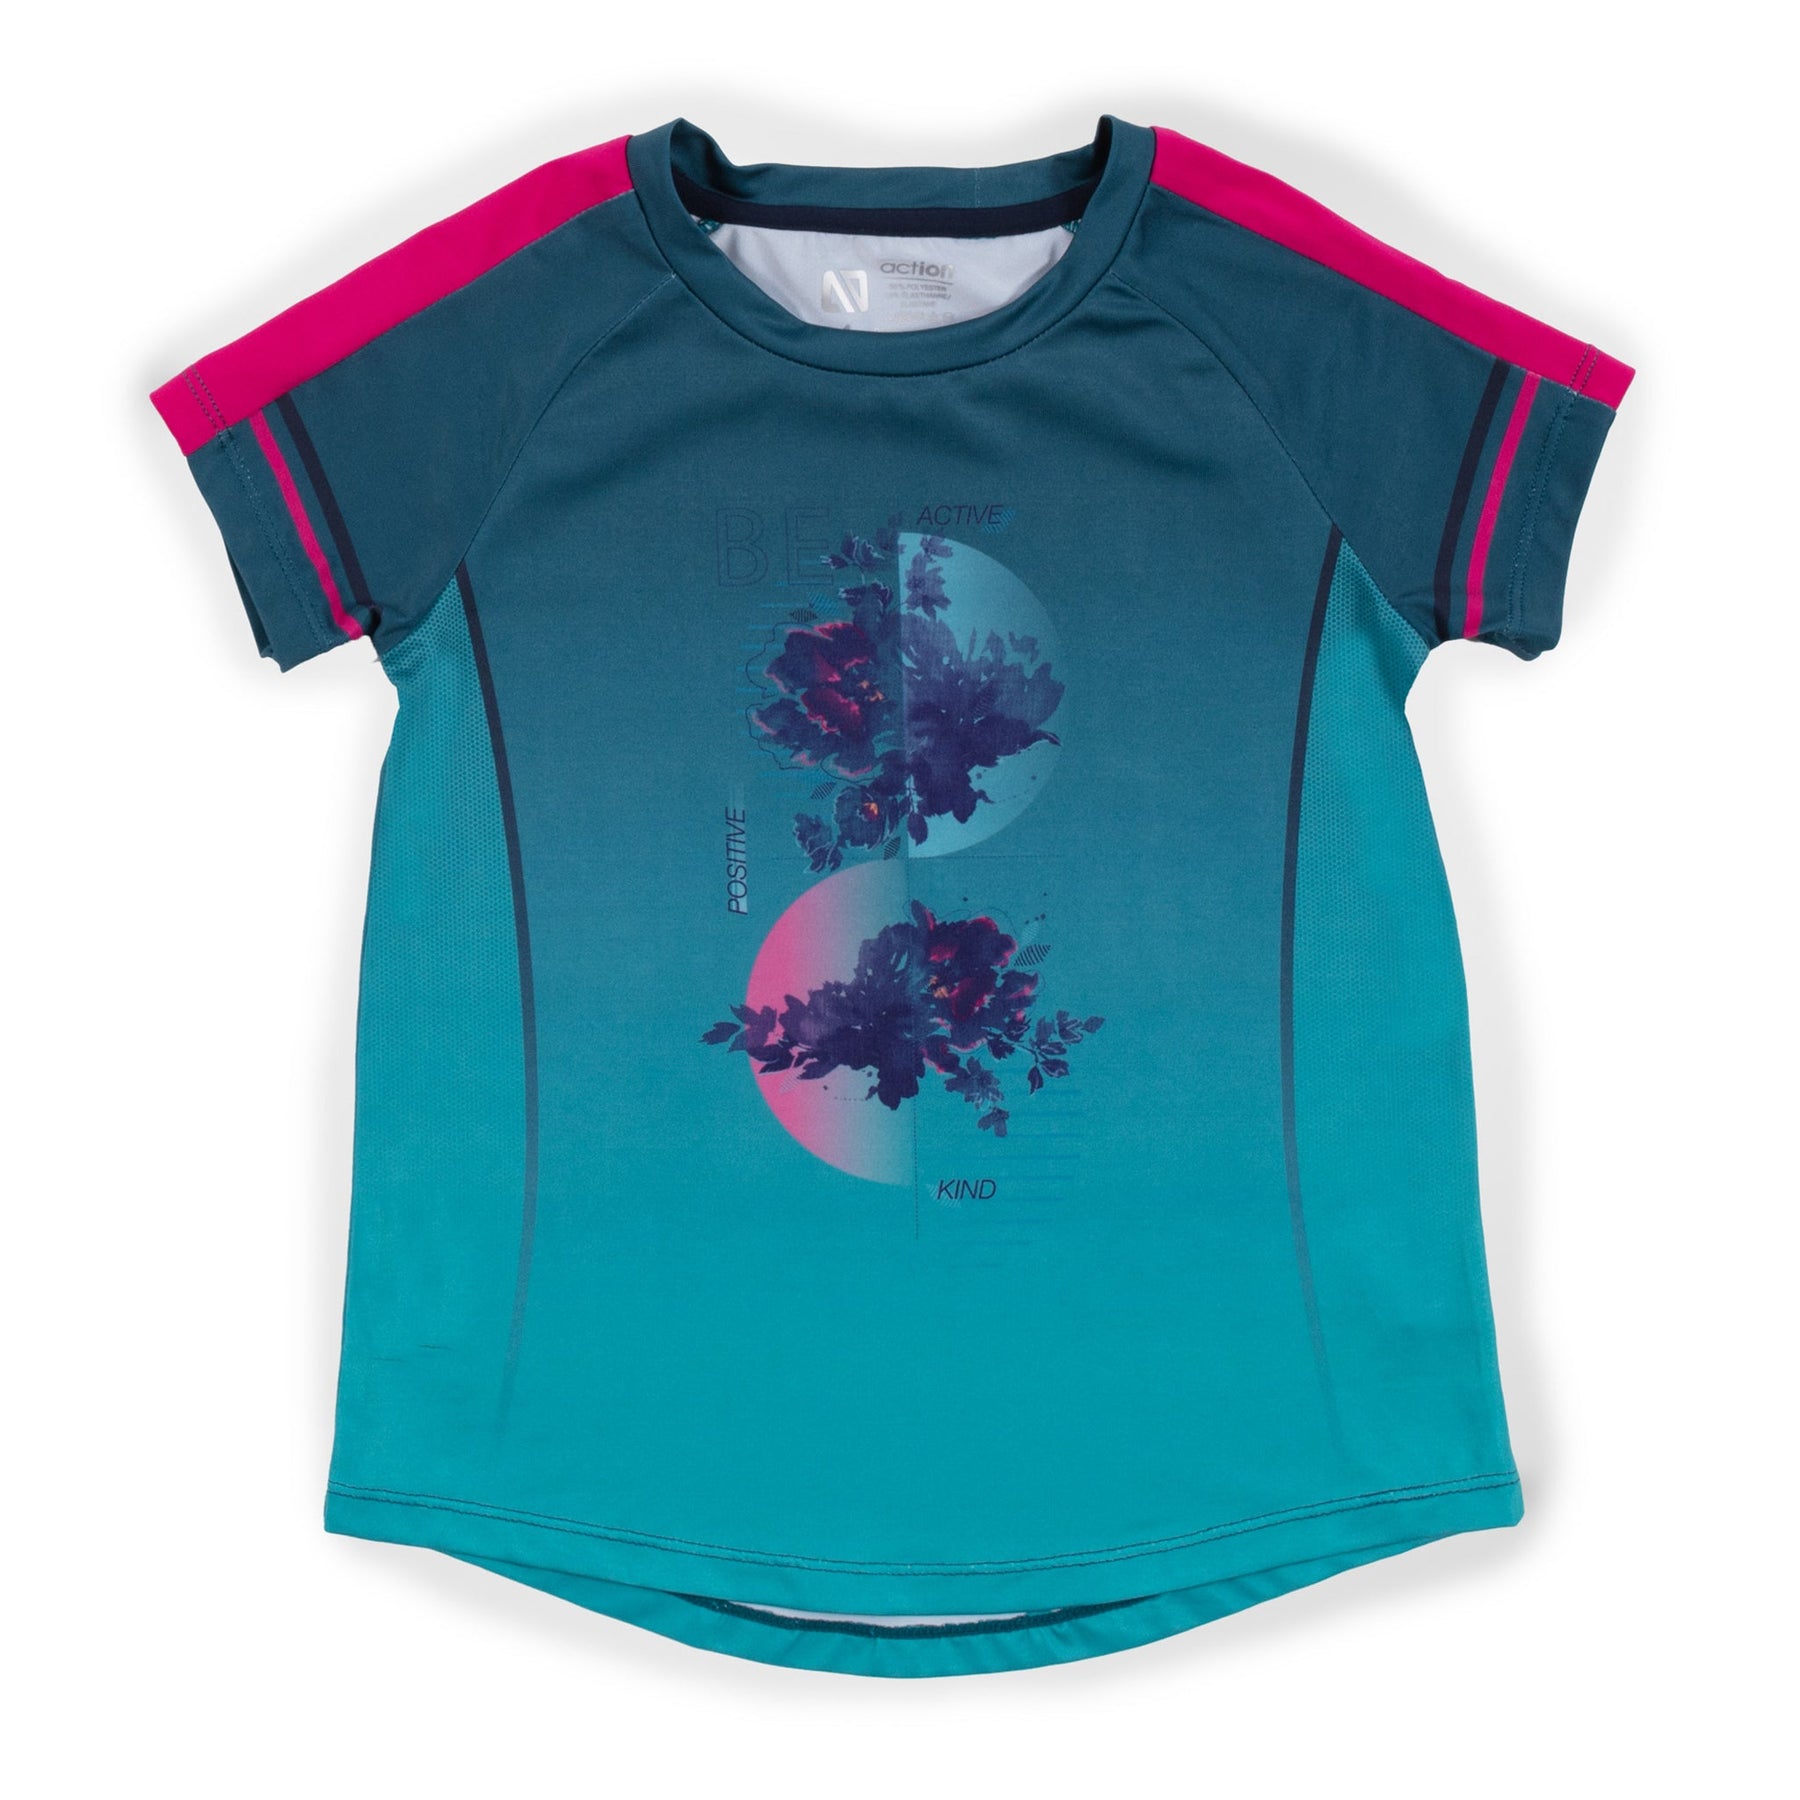 T-shirt athlétique pour enfant fille par Nanö | F23A82-04 Sarcelle | Boutique Flos, vêtements mode pour bébés et enfants